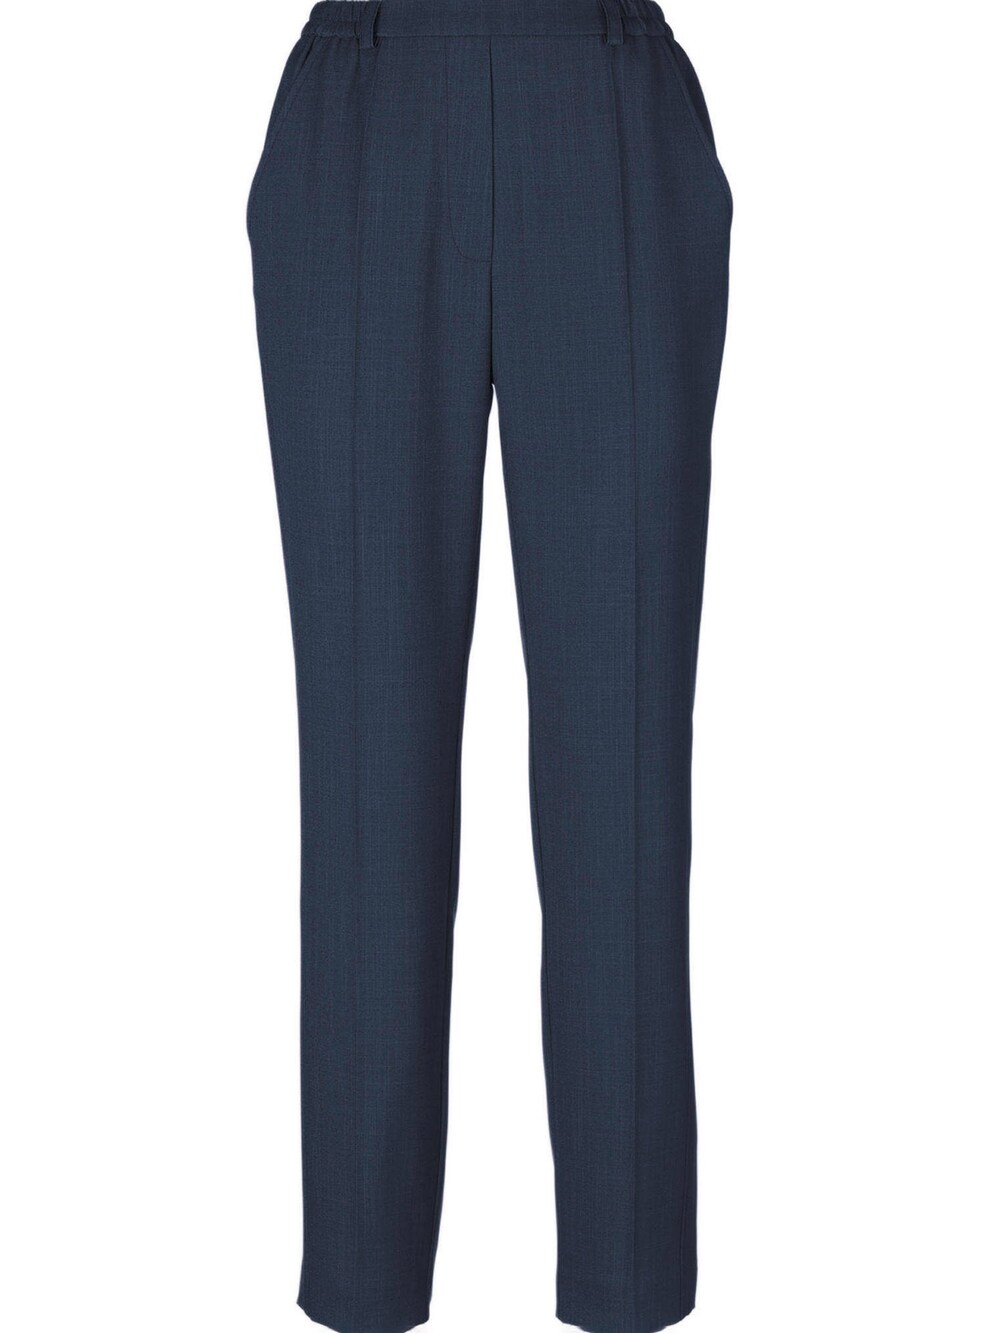 Обычные плиссированные брюки Goldner, темно-синий обычные брюки goldner морской синий